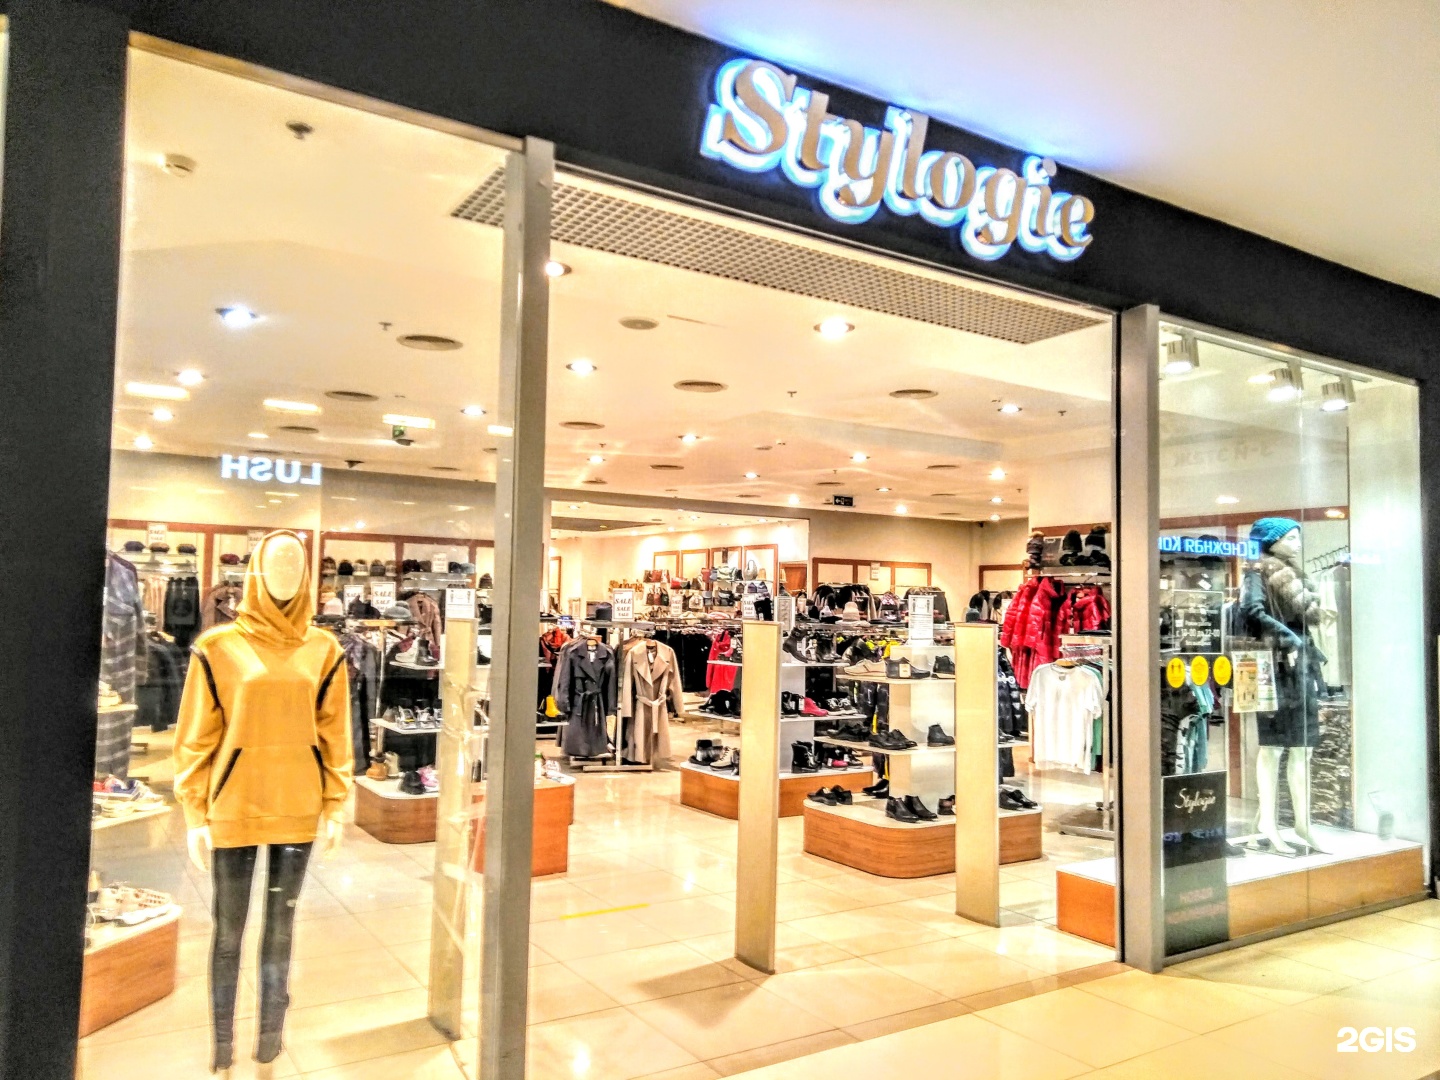 Stylogie Магазин Одежды В Москве